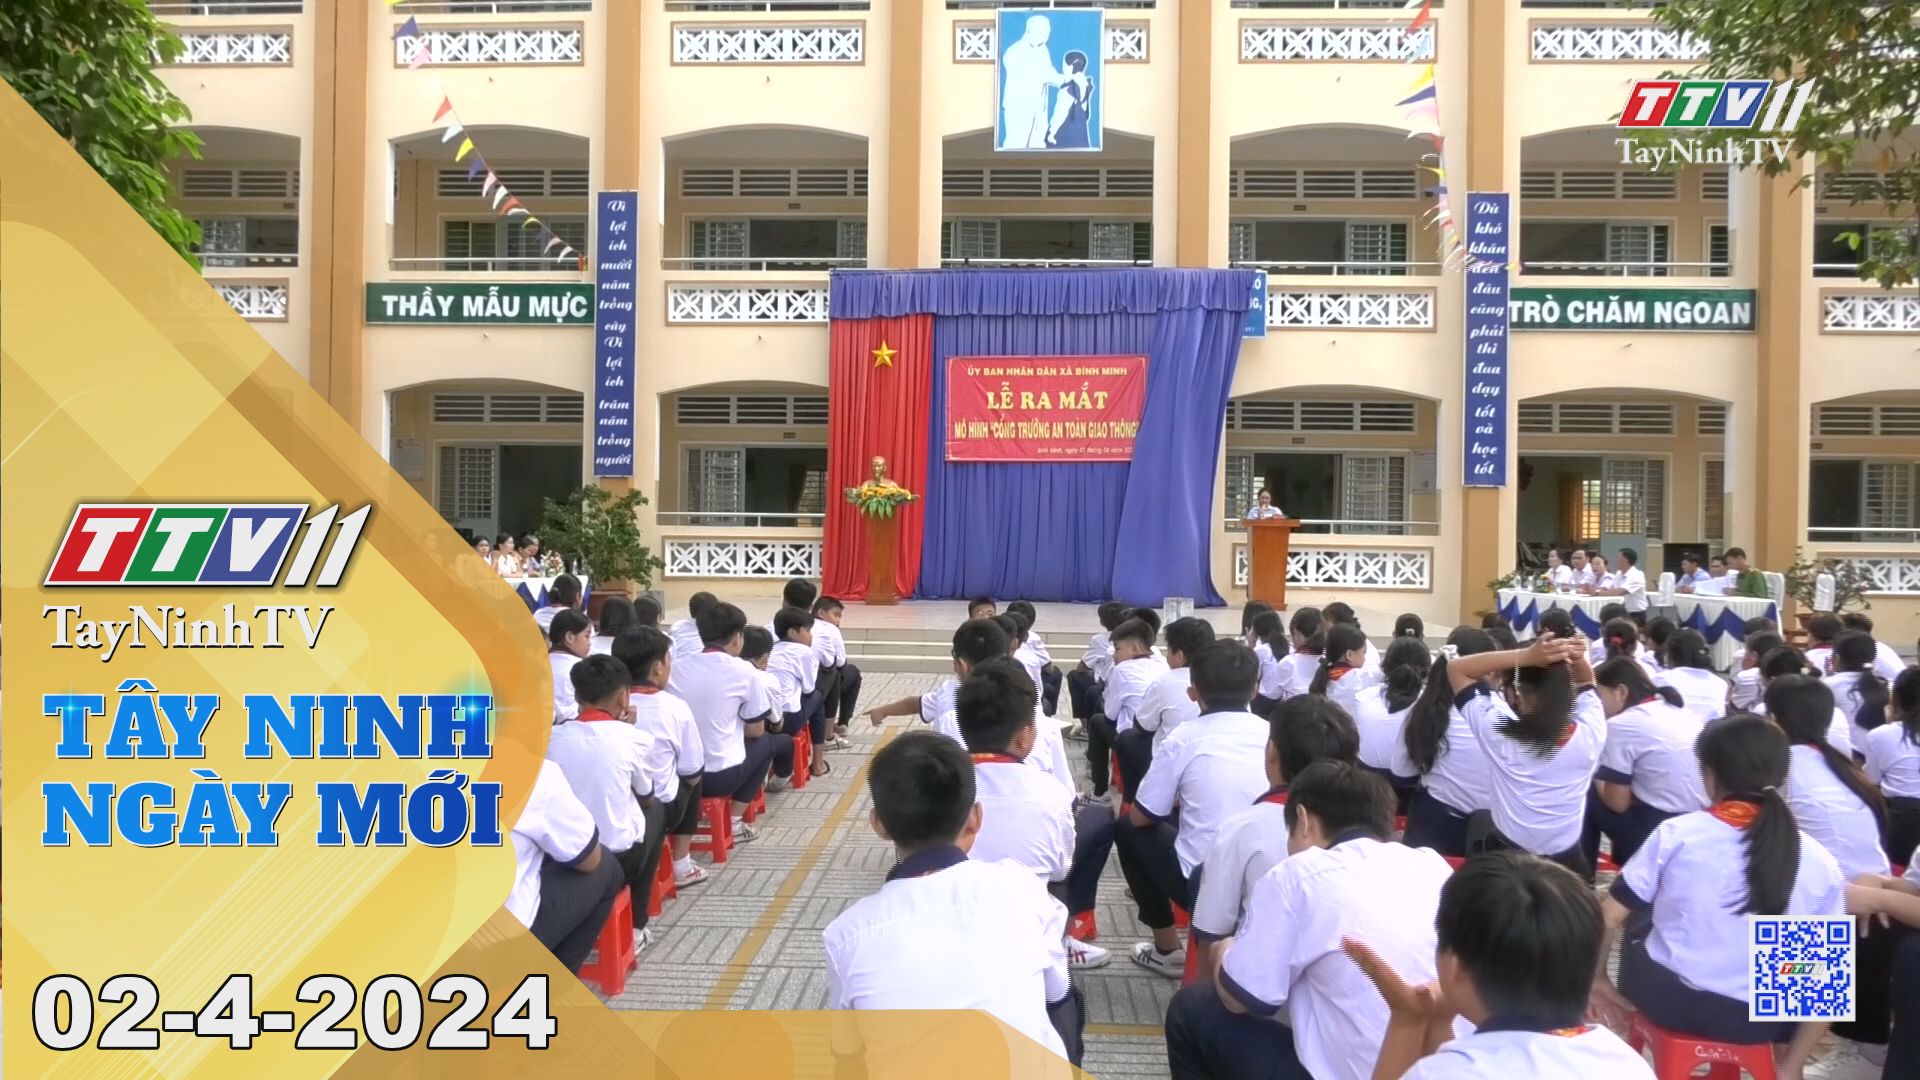 Tây Ninh ngày mới 02-4-2024 | Tin tức hôm nay | TayNinhTV